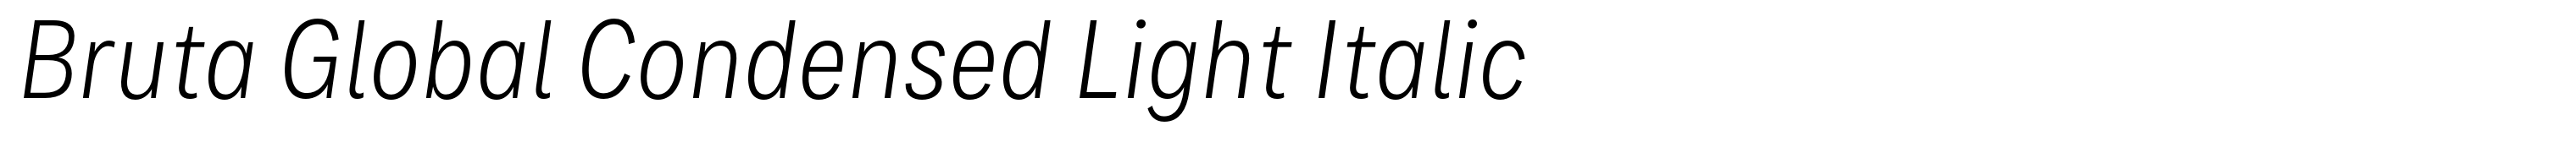 Bruta Global Condensed Light Italic